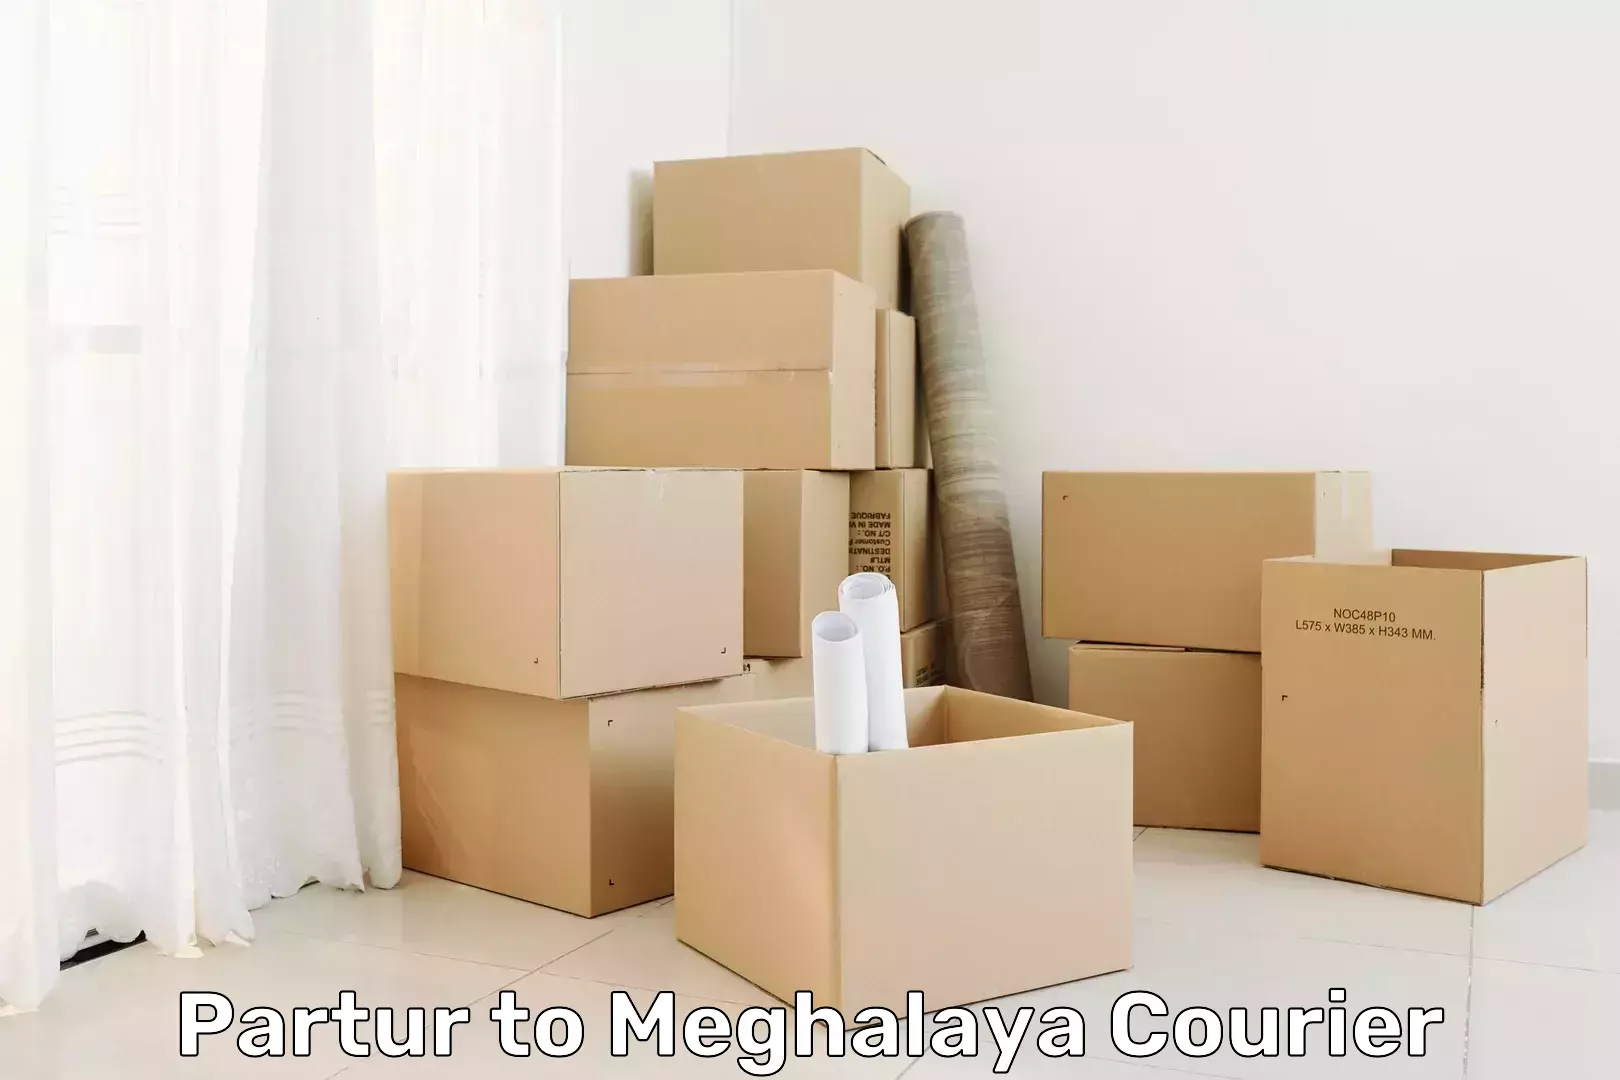 Modern parcel services Partur to Dkhiah West